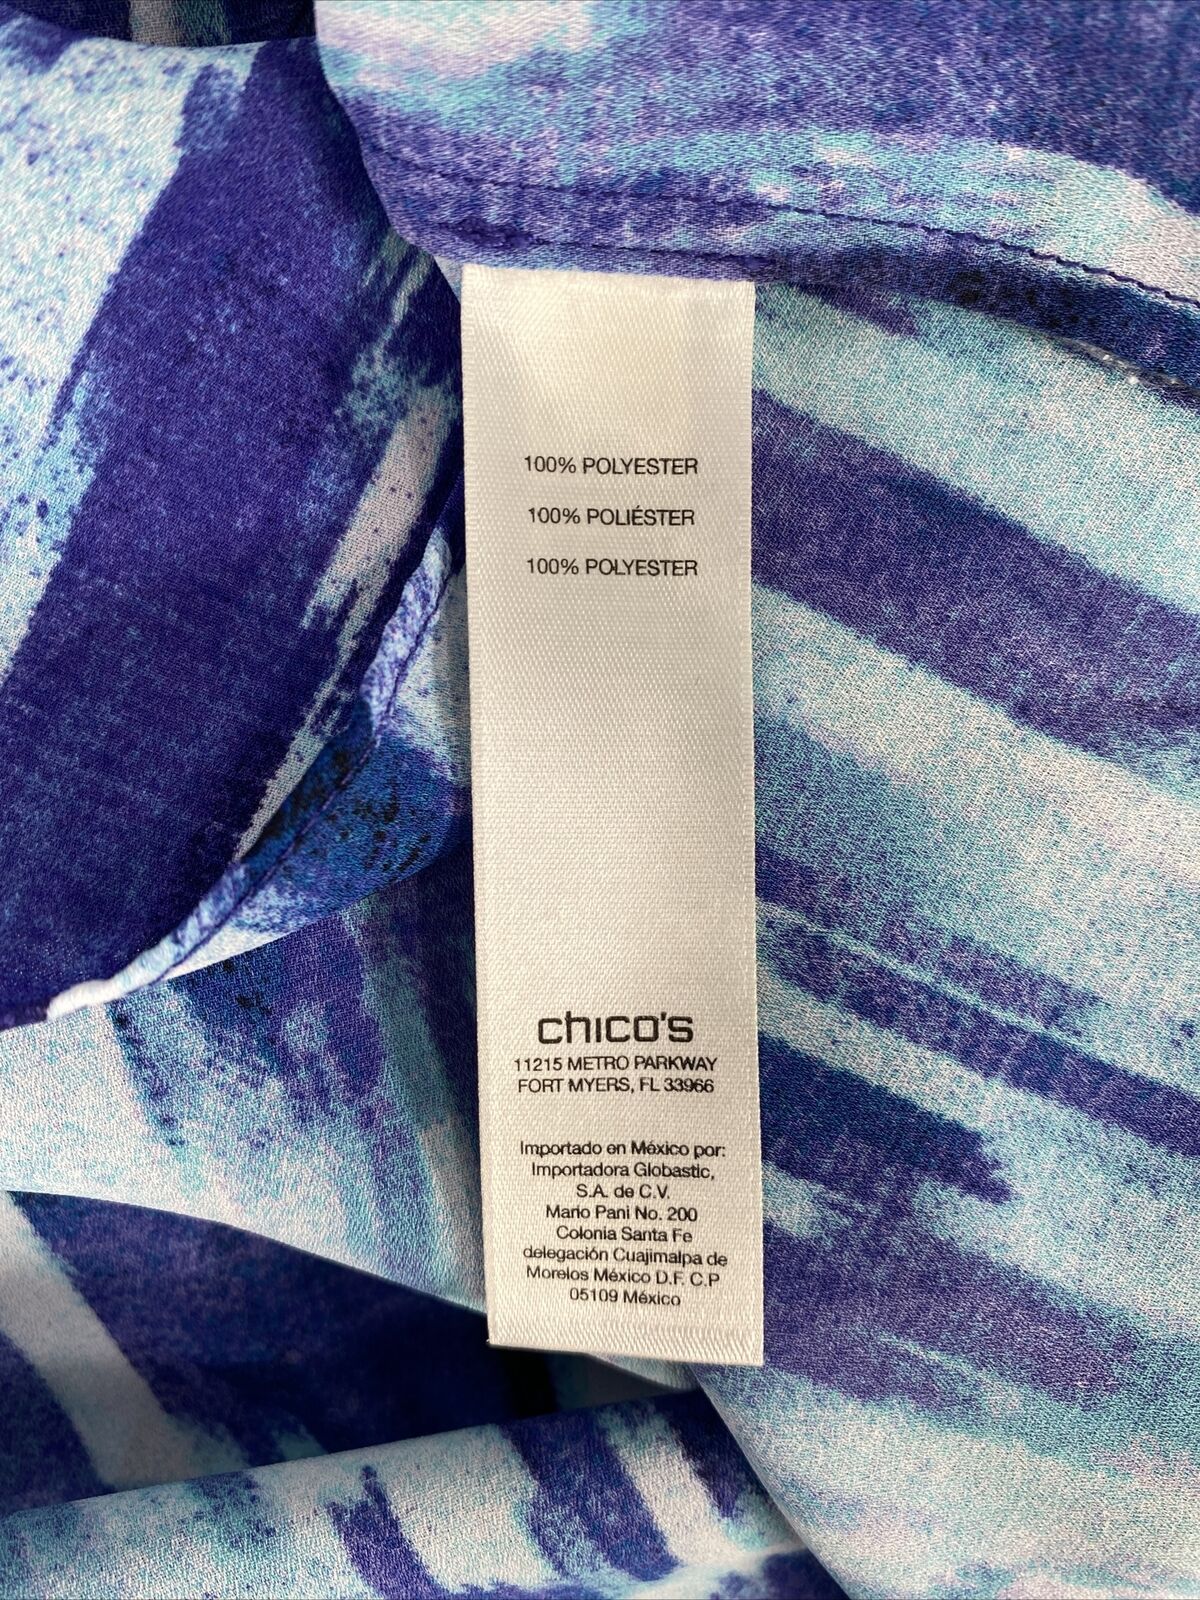 Chico's Women's Blue/Purple Hi-Low Tunic Blouse - 0 (US S)